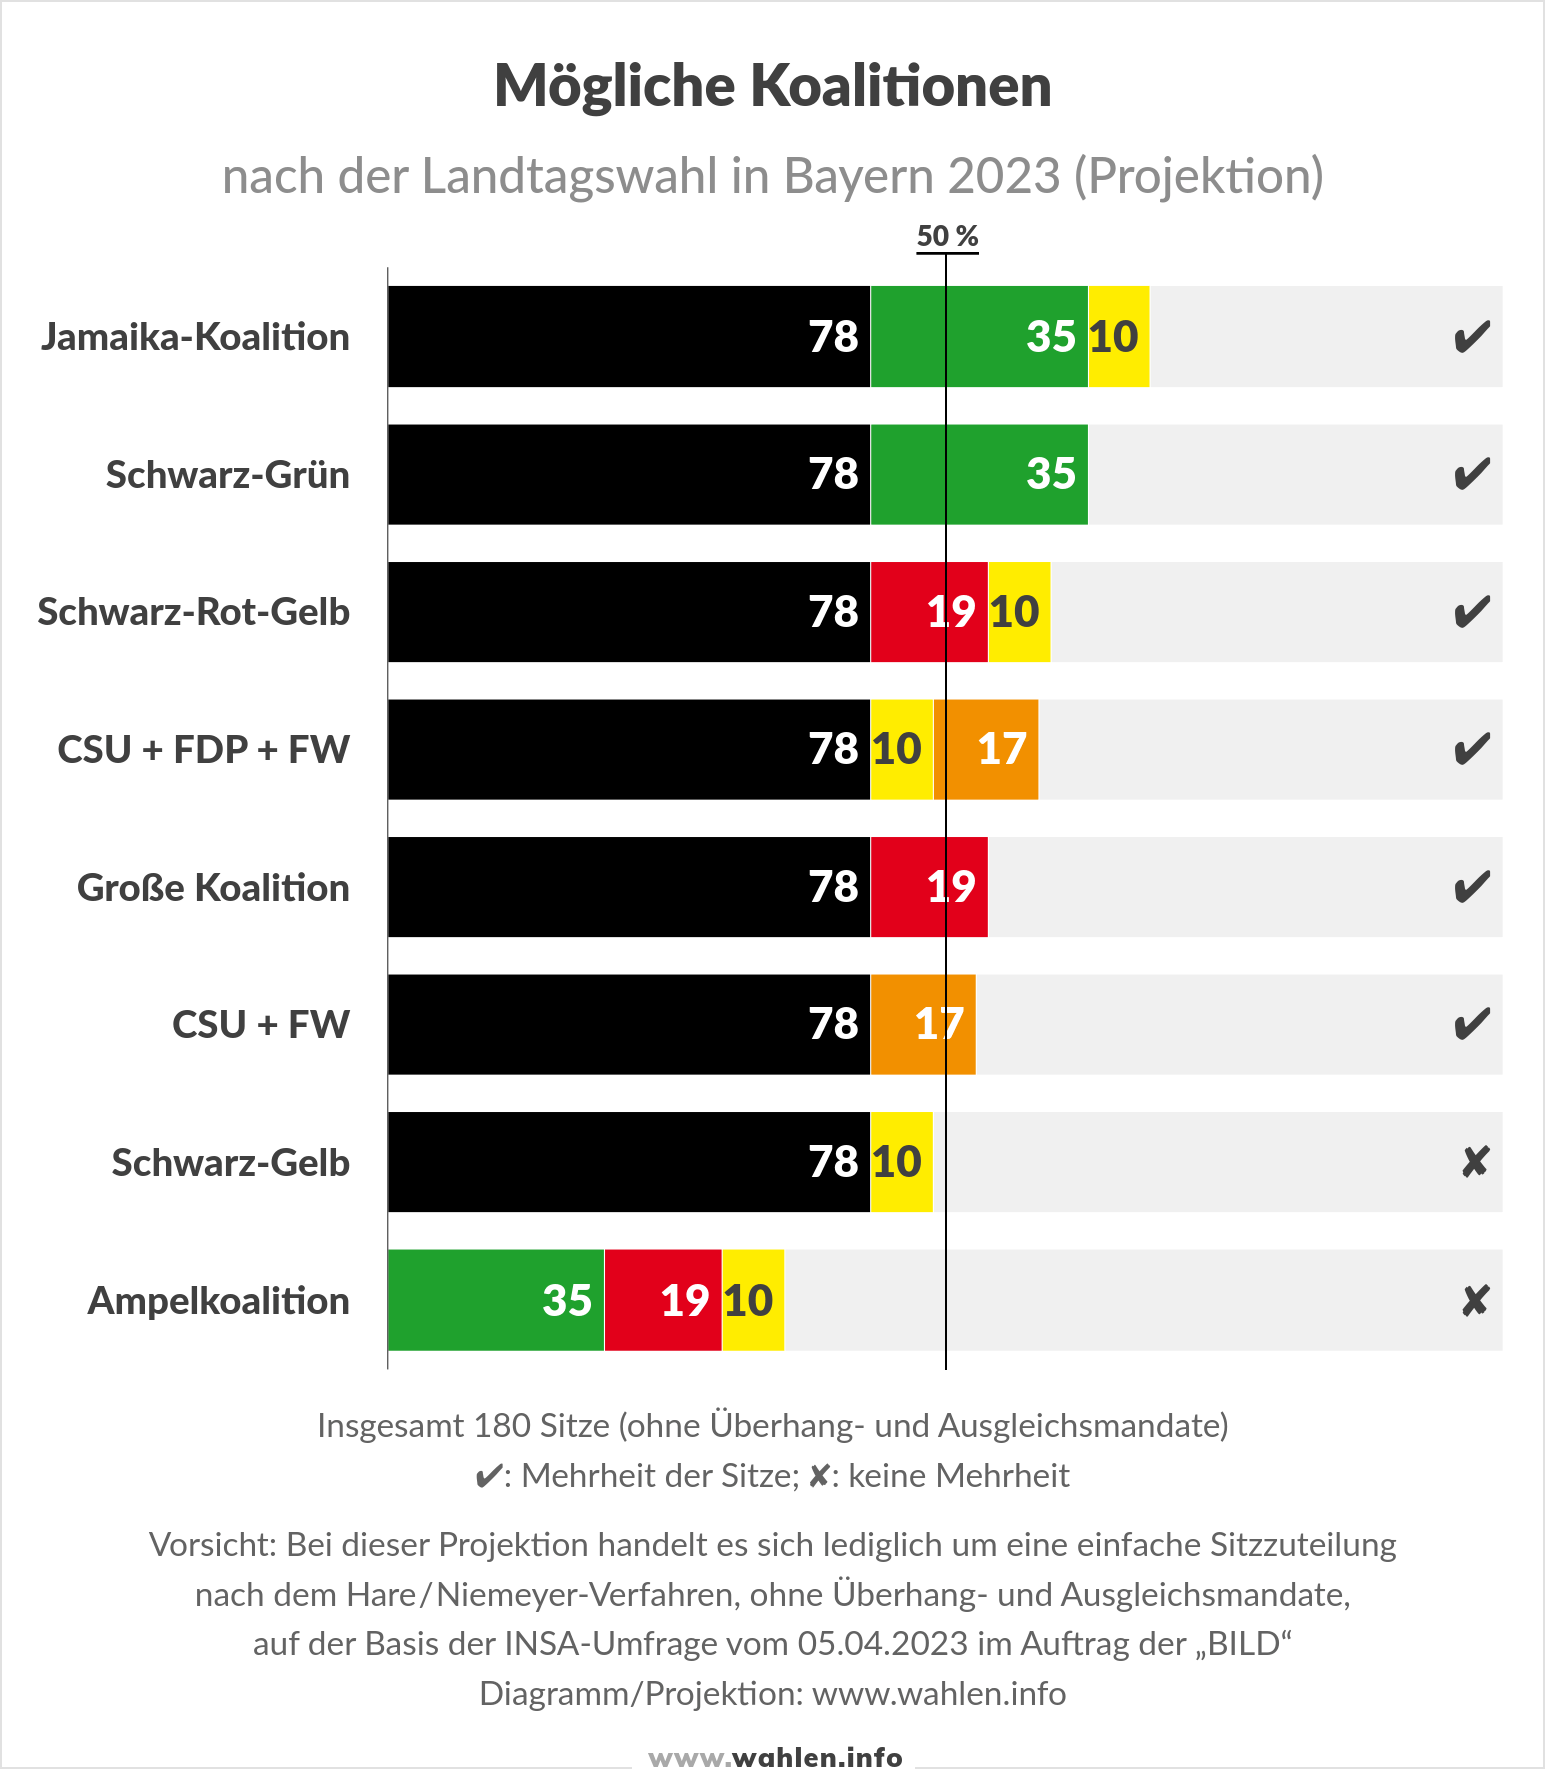 Landtagswahl in Bayern - Mögliche Koalitionen nach der Landtagswahl 2023